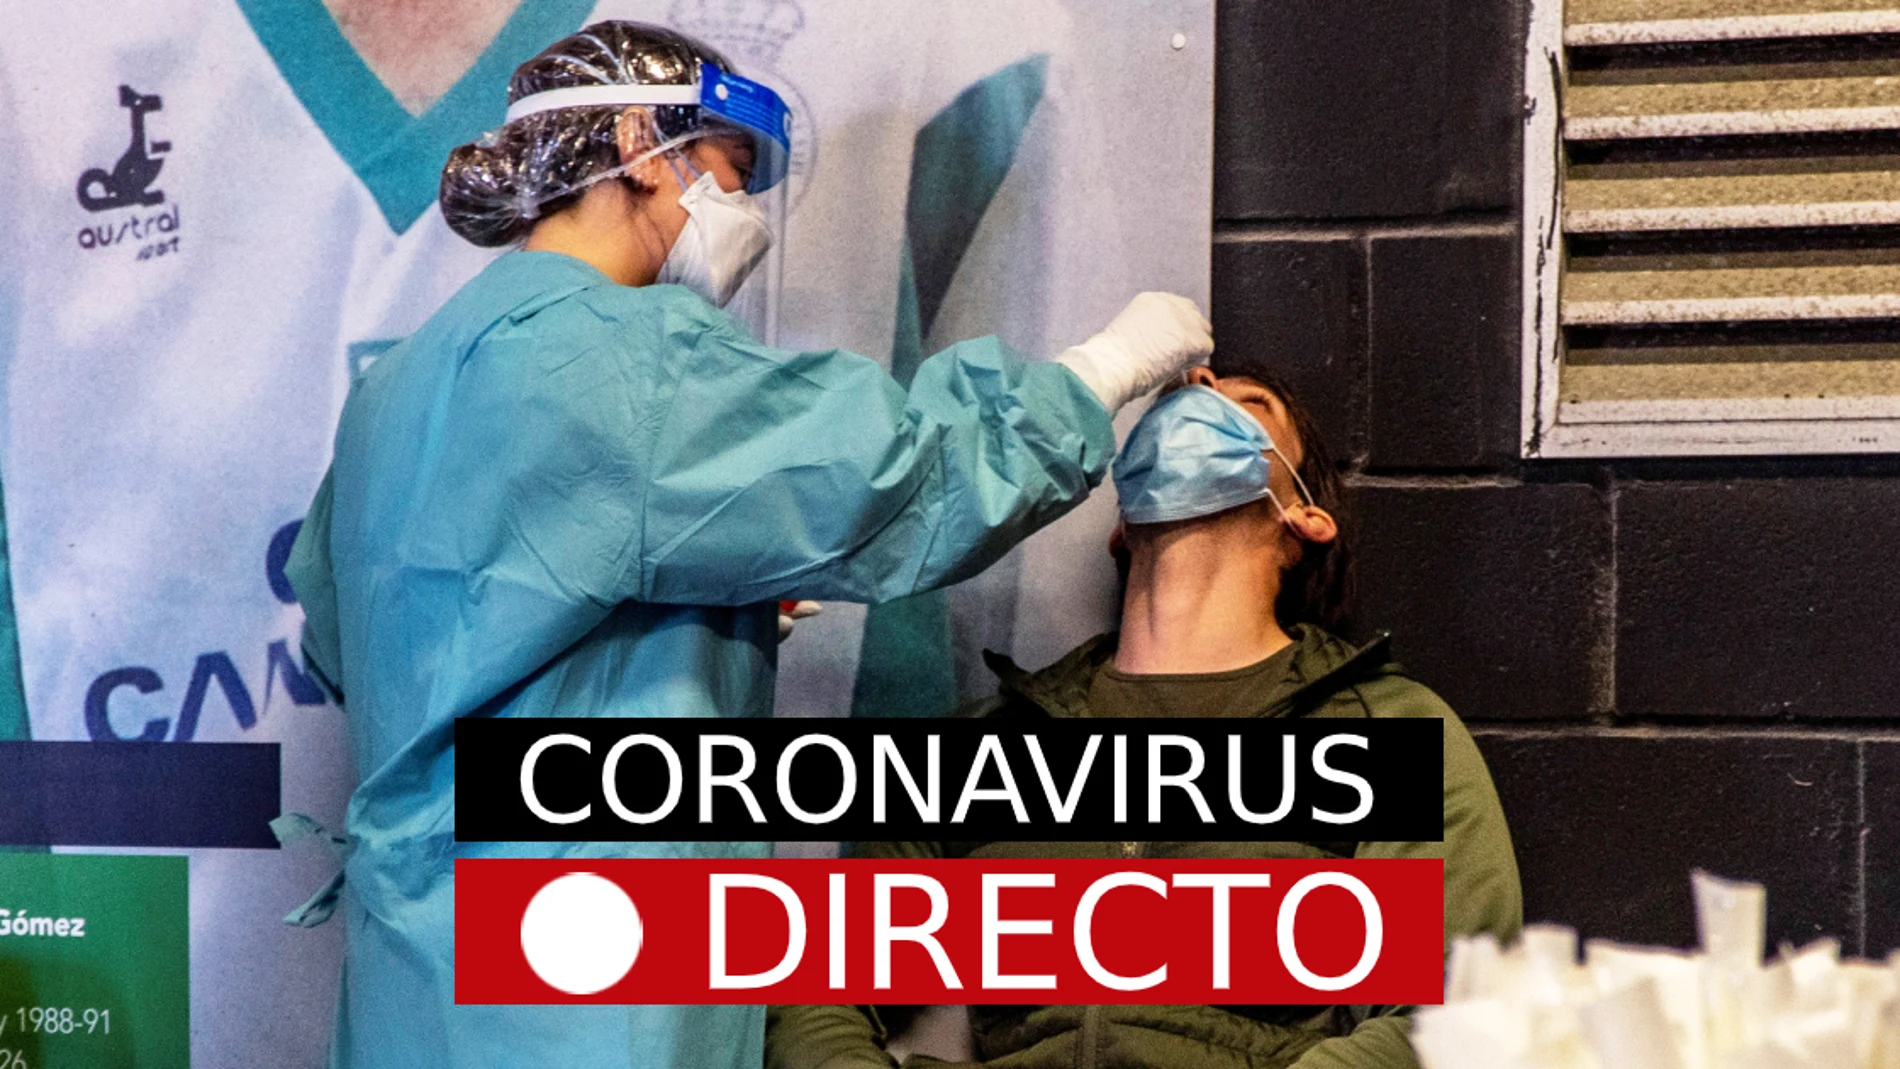 Última hora de coronavirus: Vacuna en España, certificado COVID, nuevas medidas y restricciones, hoy